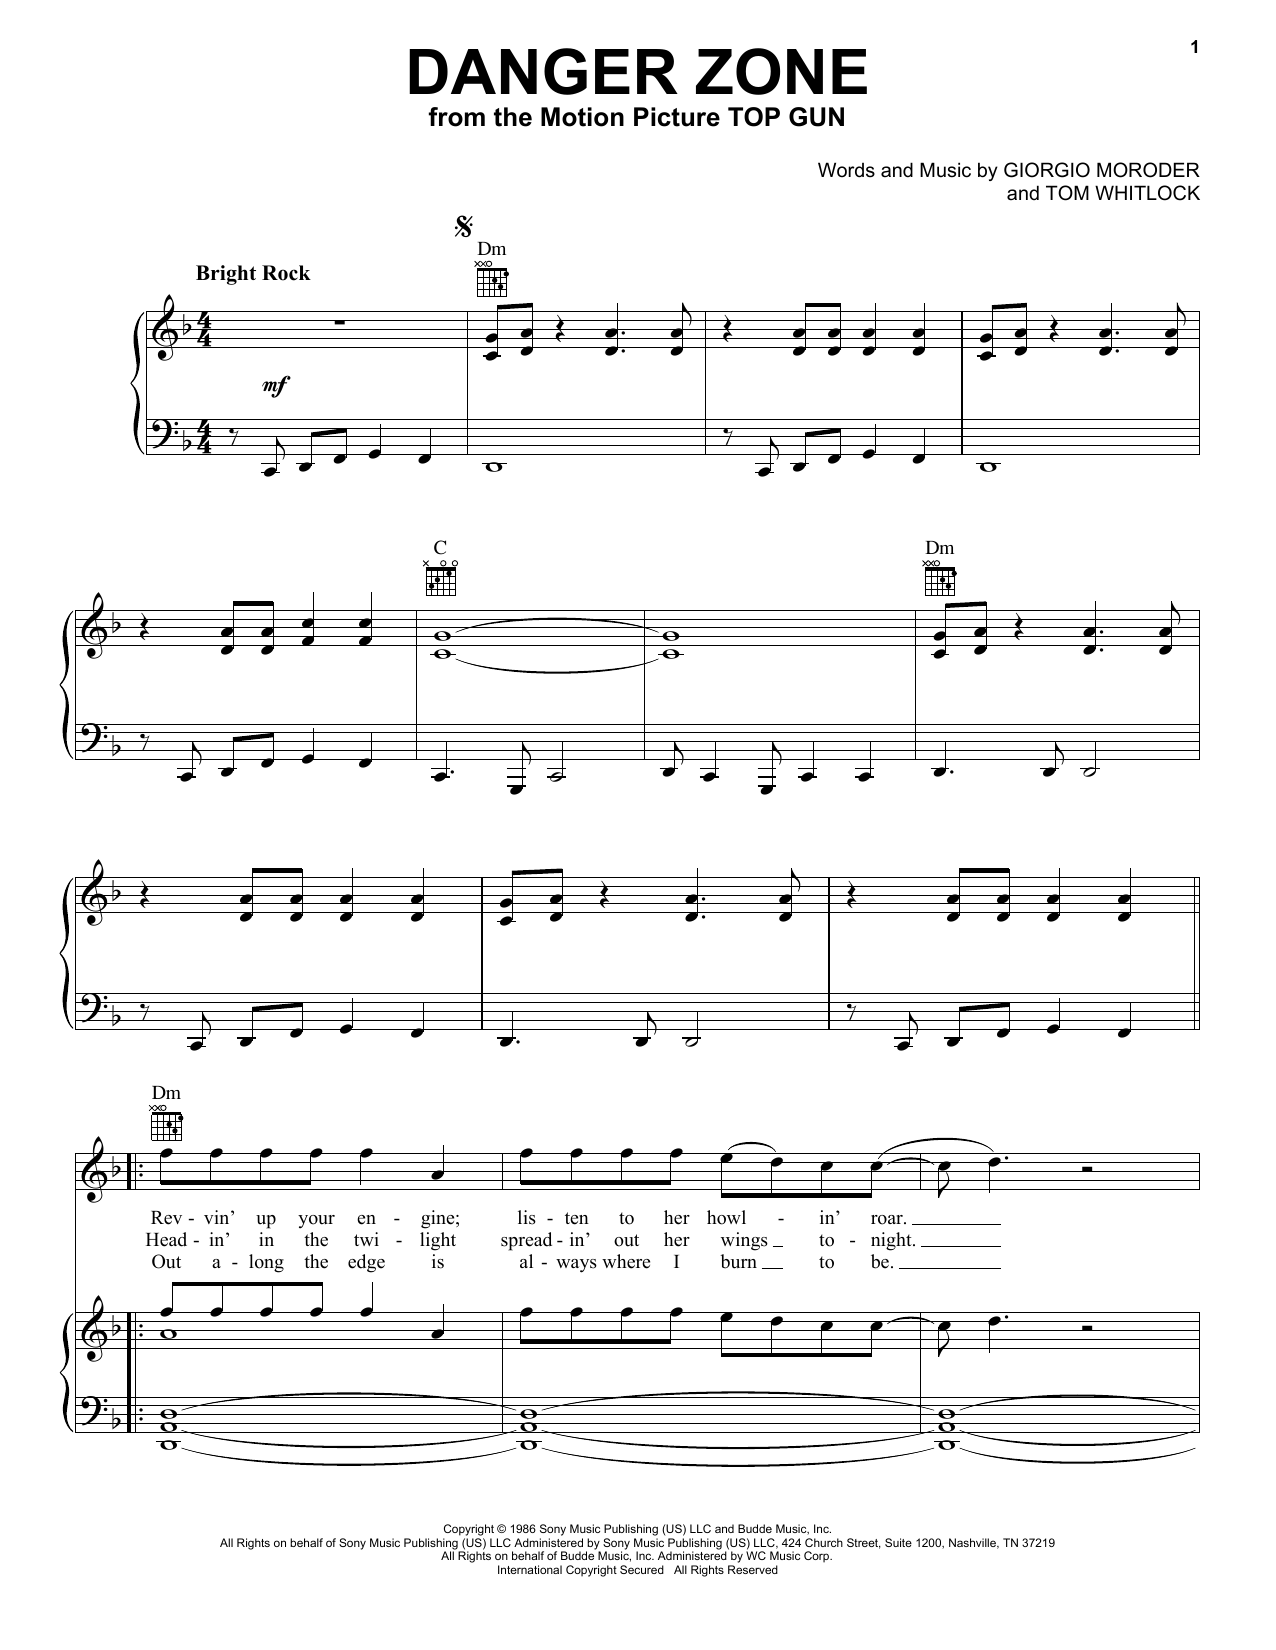 Kenny Loggins Danger Zone Sheet Music Notes & Chords for Violin - Download or Print PDF